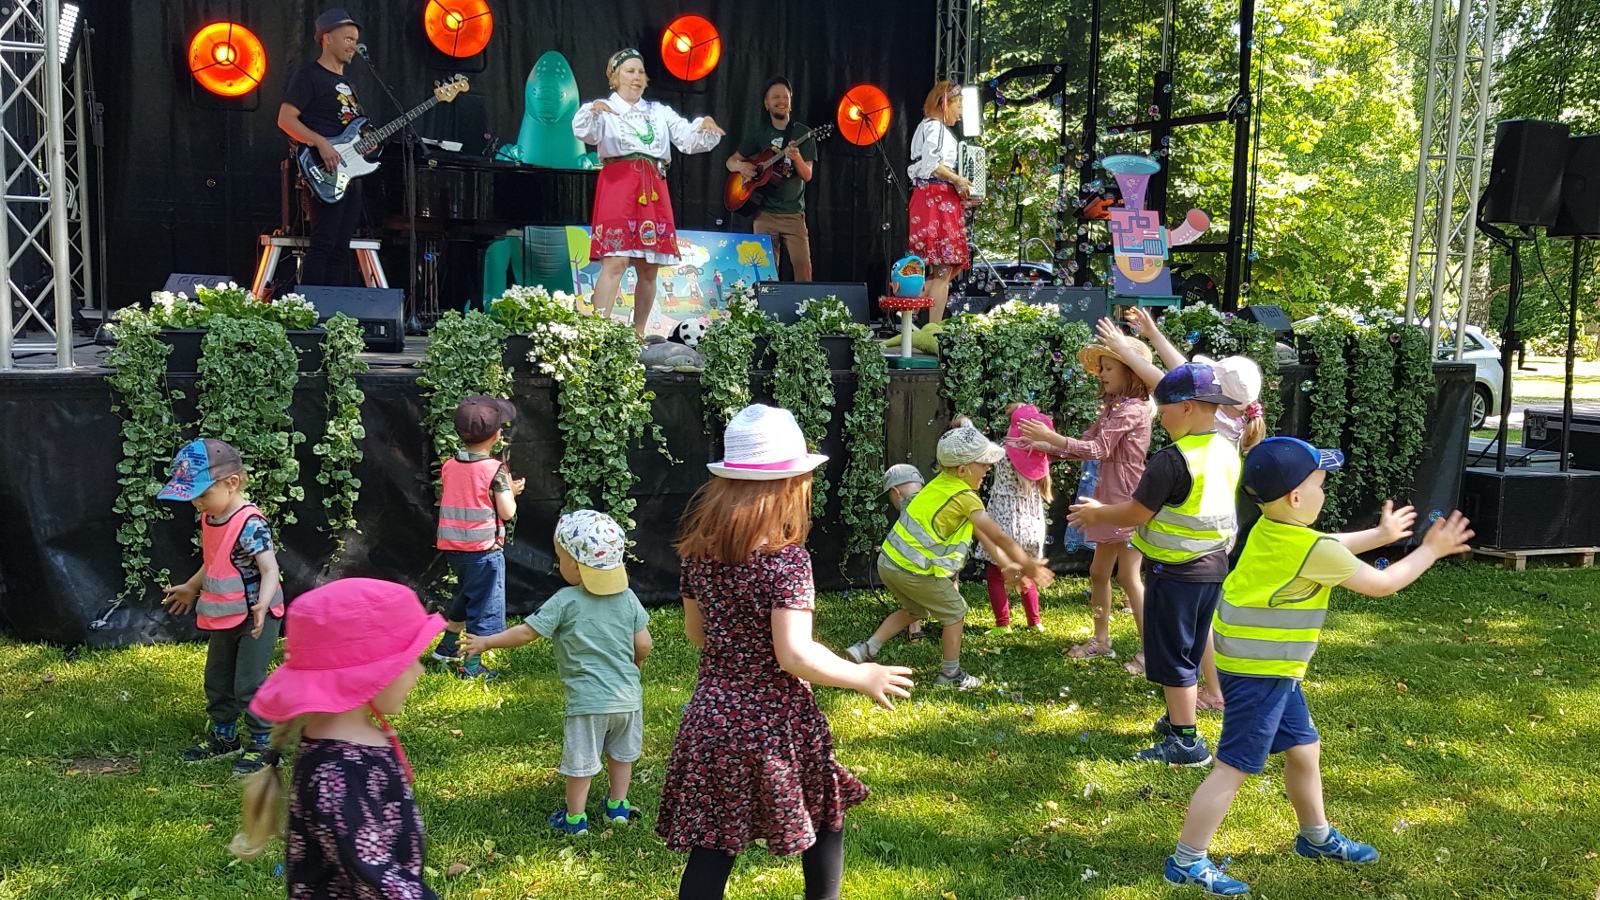 Kuvassa ovat Mimmien esiintyjät Pauliina Lerche ja Hannamari Vallila punaisissa puolihameissa ja taustalla bändin soittaja flyygelissä, basisti ja kitaristi. Puistonäyttämön edessä alhaalla nurmikolla on joukko lapsia leikkimässä.